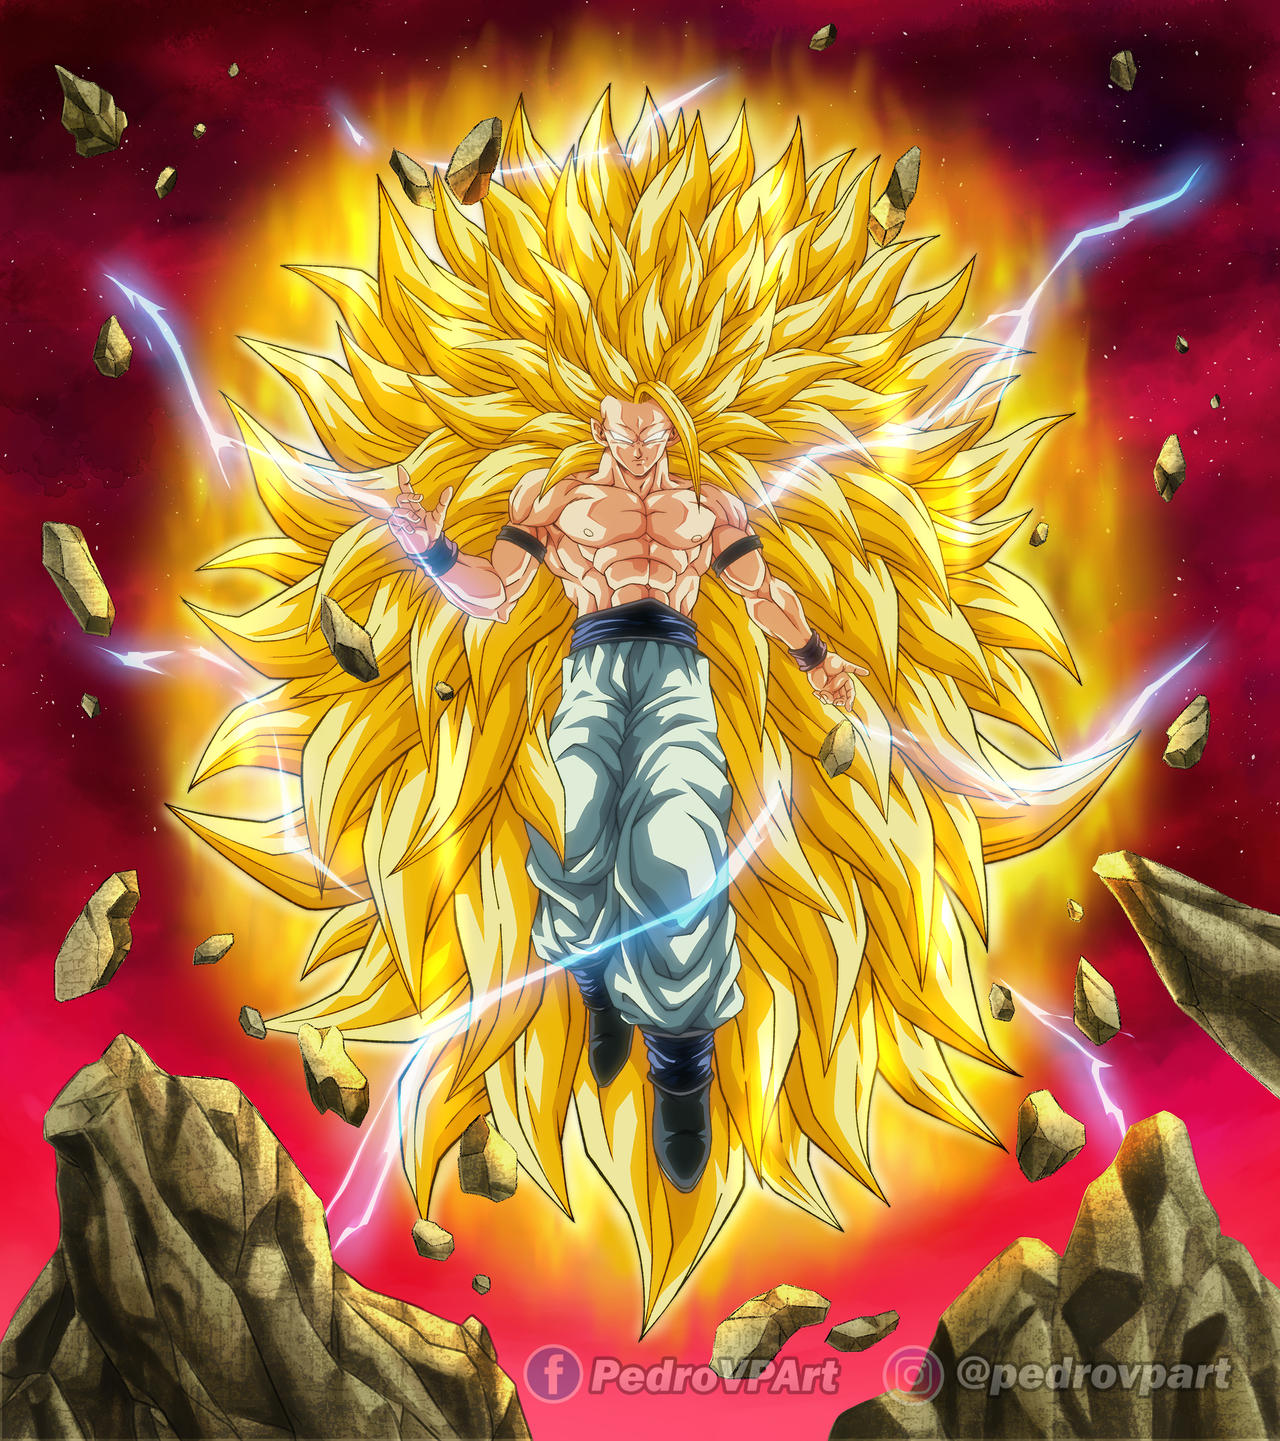 Super sayajin infinito  Goku desenho, Goku, Super sayajin